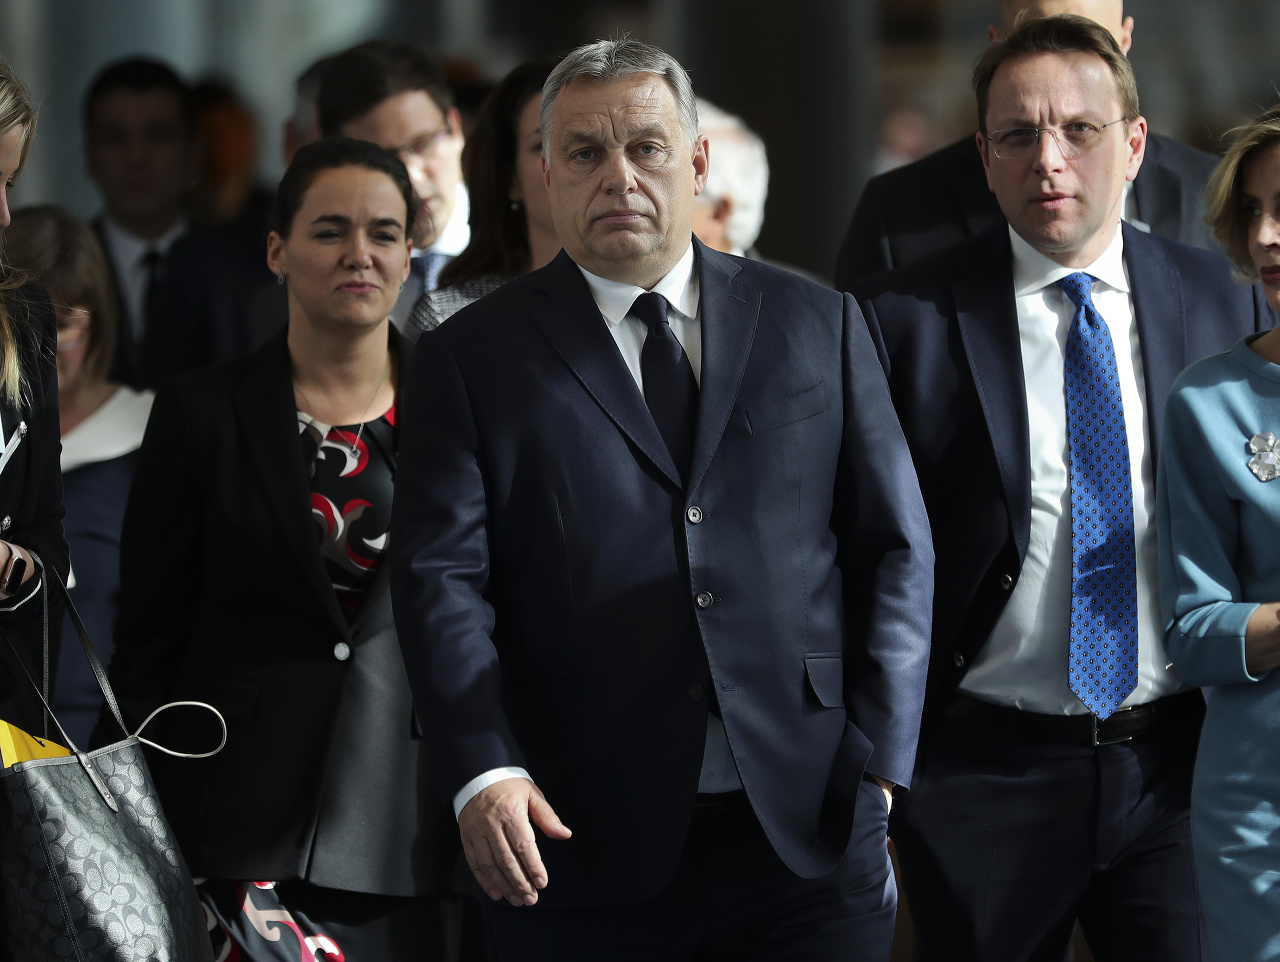 Maďarská vládna strana Fidesz vystupuje z Európskej ľudovej strany